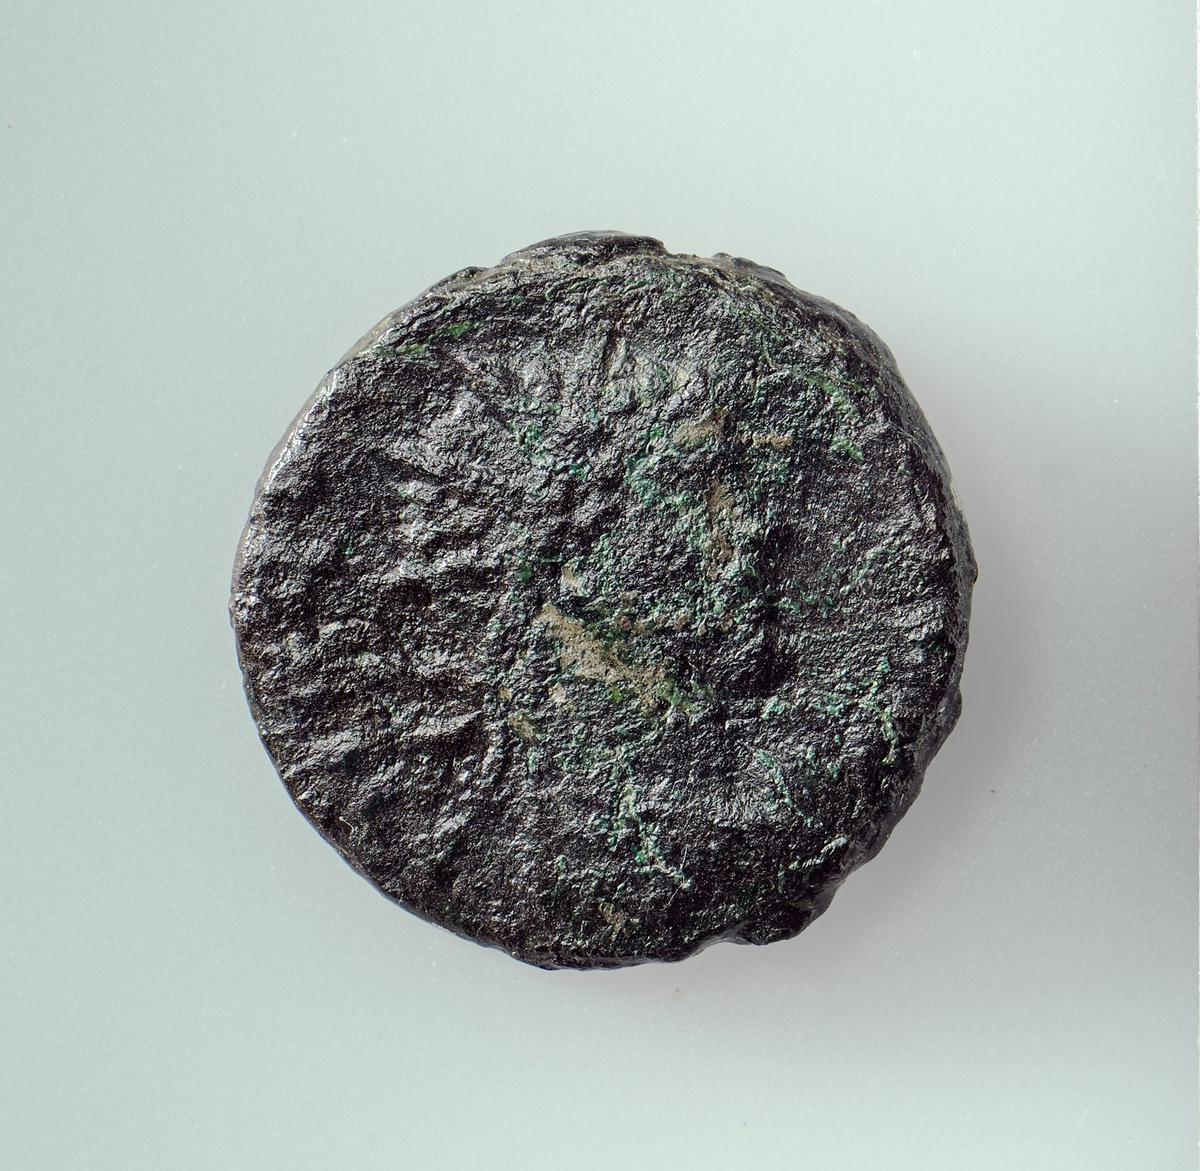 Abbildung: Kaiser Quintillus auf einer Münze, die im Bereich der Baarburg gefunden wurde.